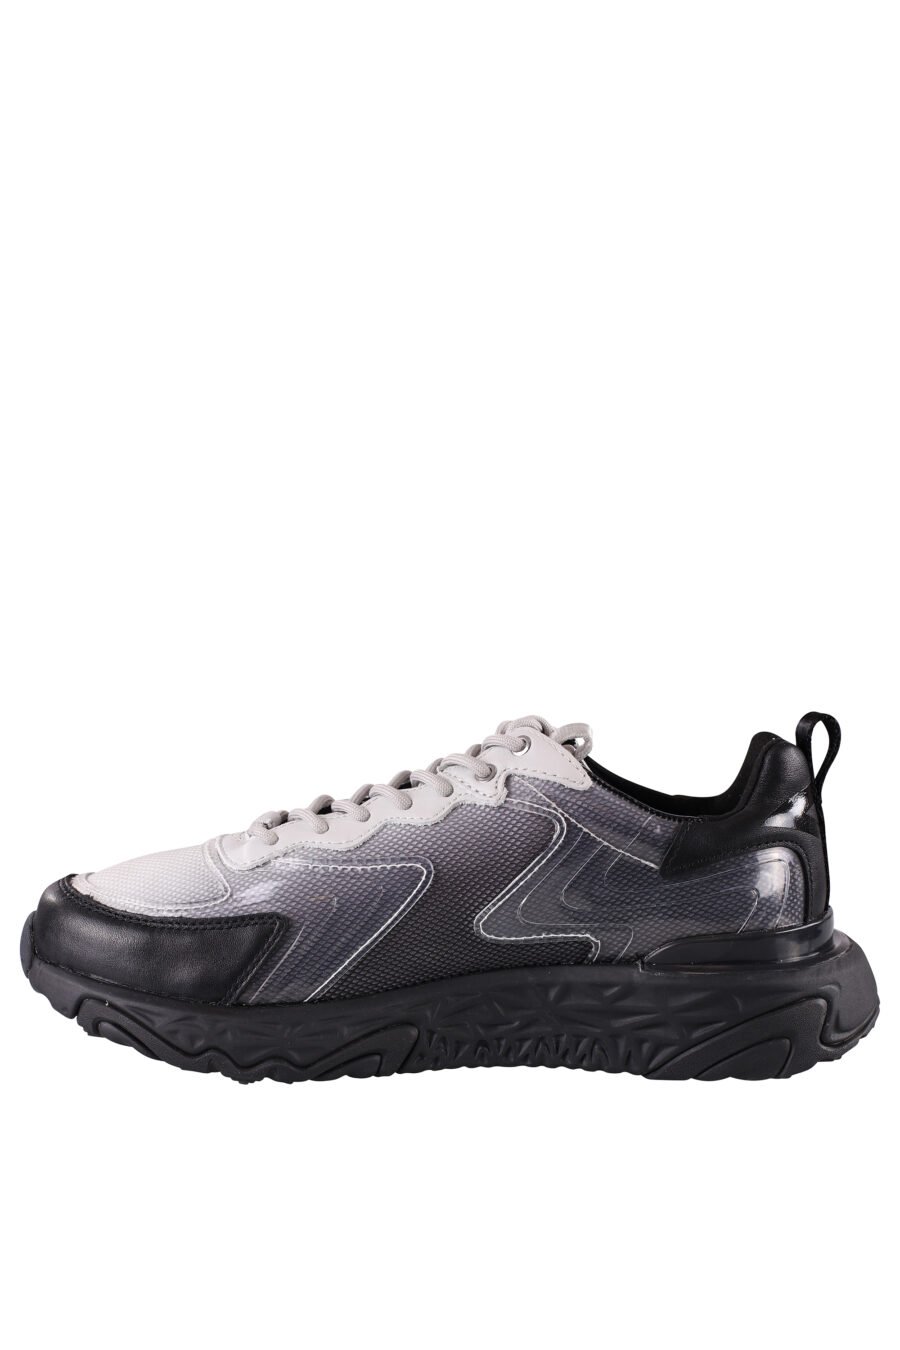 Zapatillas negras "blaze" con detalles blancos y transparentes - IMG 8480